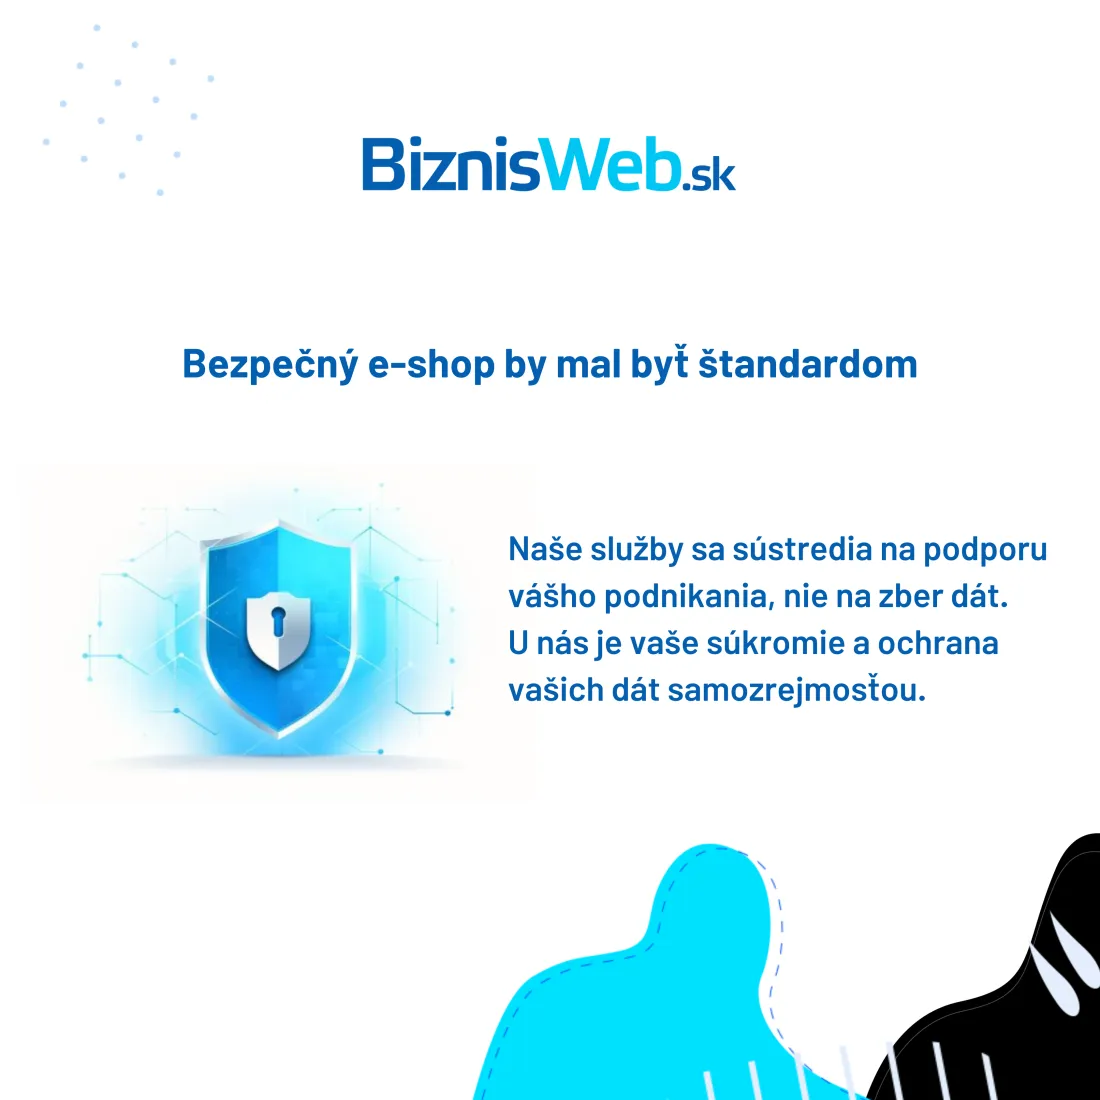 Vlastnosti BiznisWebu: všetko pre bezpečný e-shop